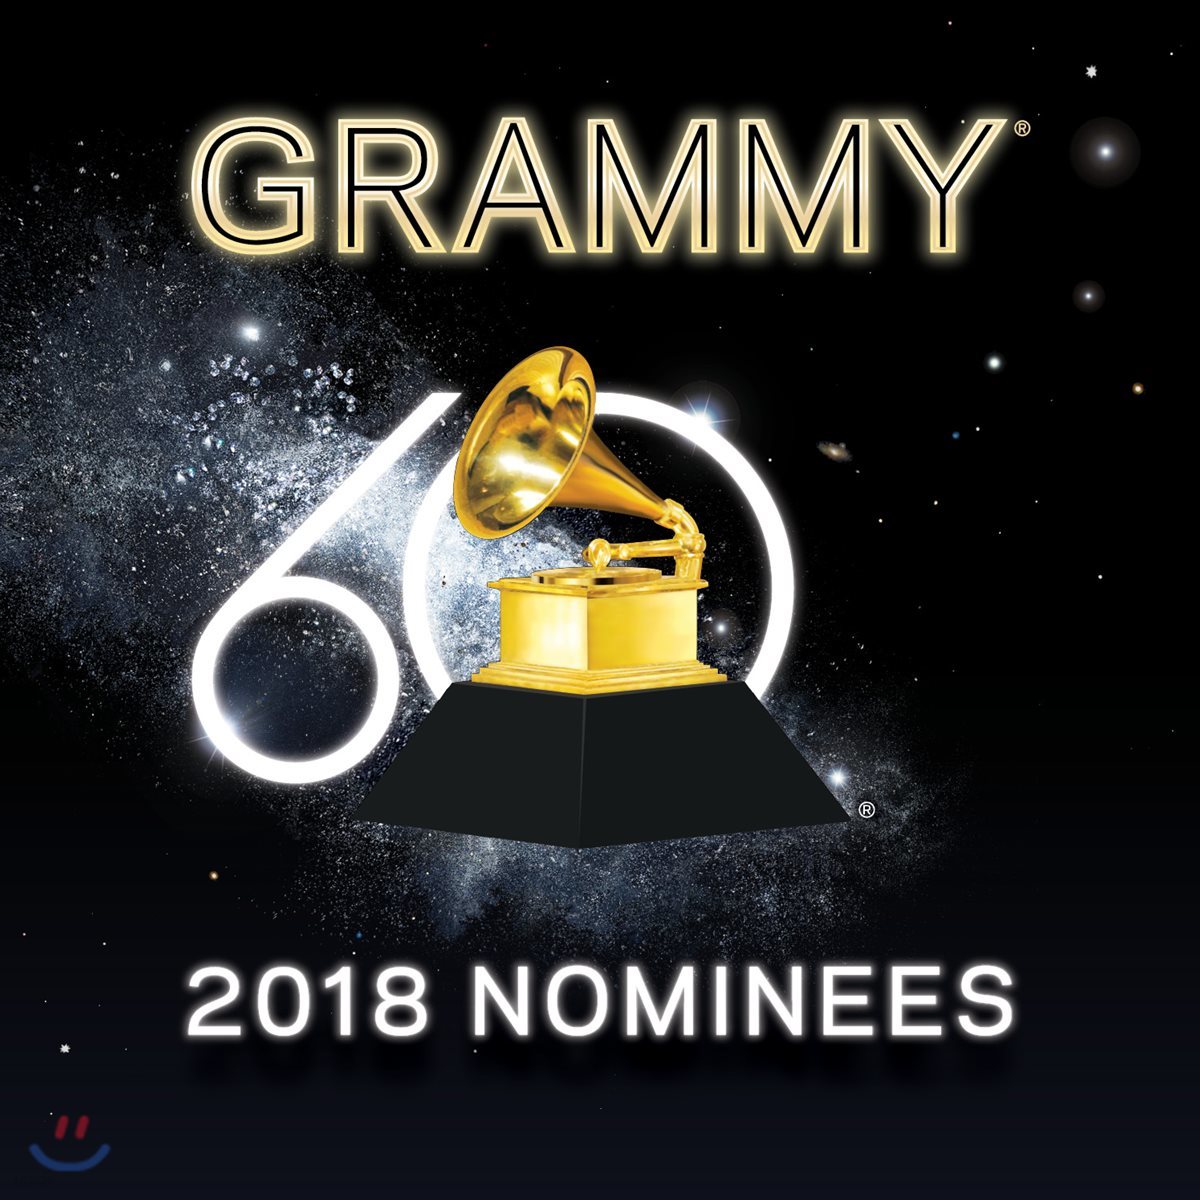 2018 그래미 노미니즈 (2018 Grammy Nominees)